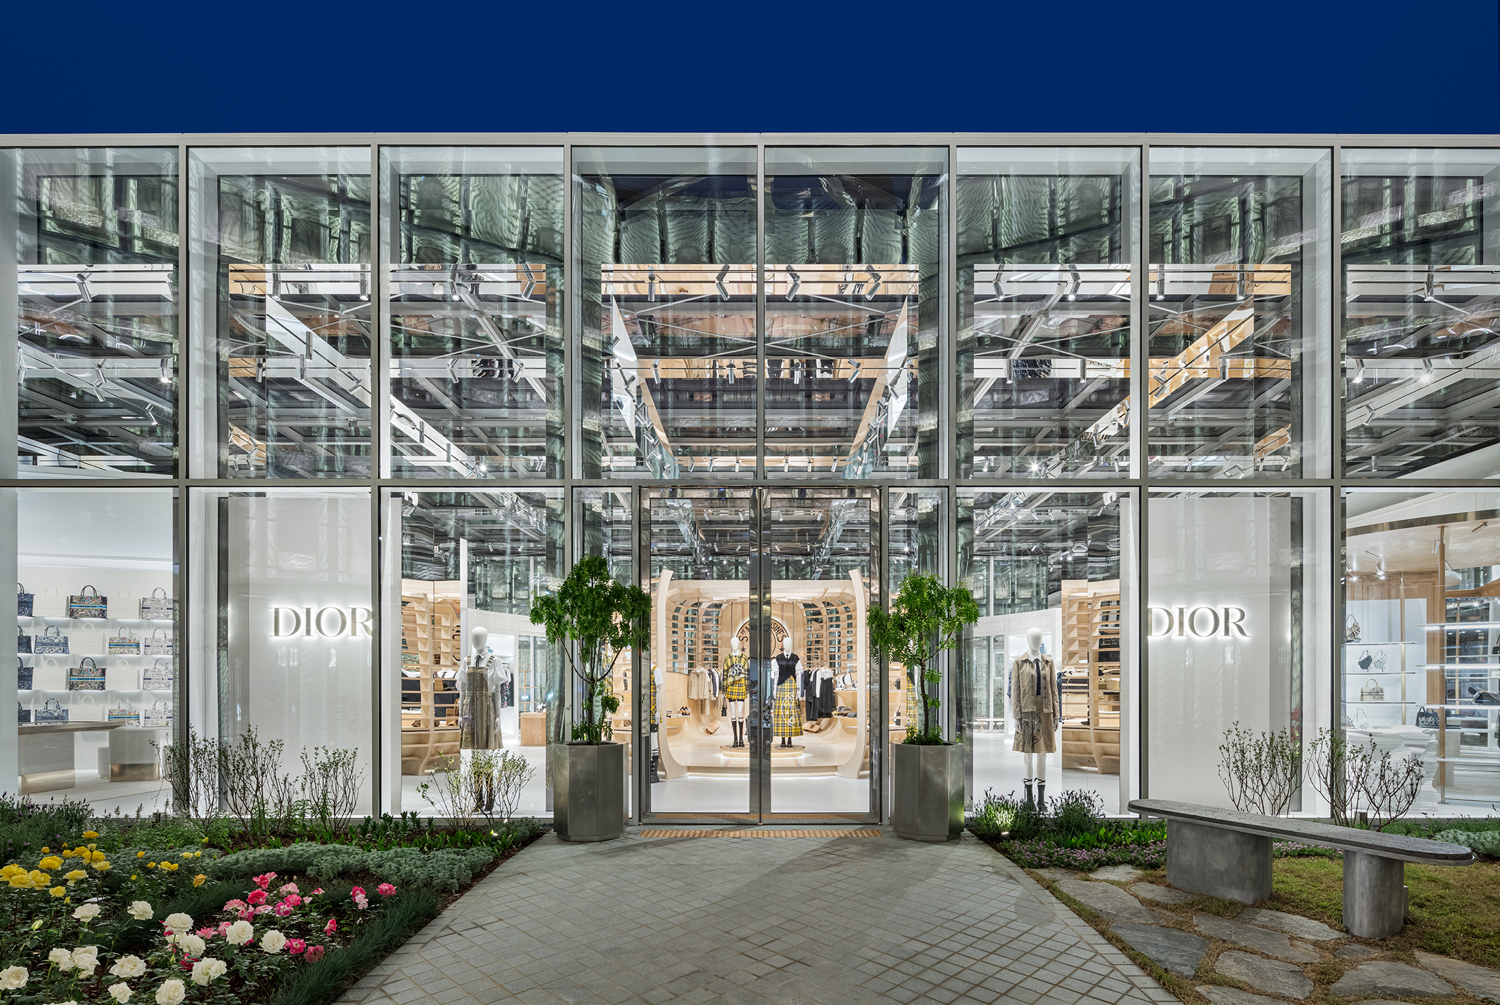 Dior inaugura conceito revolucionário de loja com dimensões estratosféricas  em Seoul - Blog Ana Cláudia Thorpe